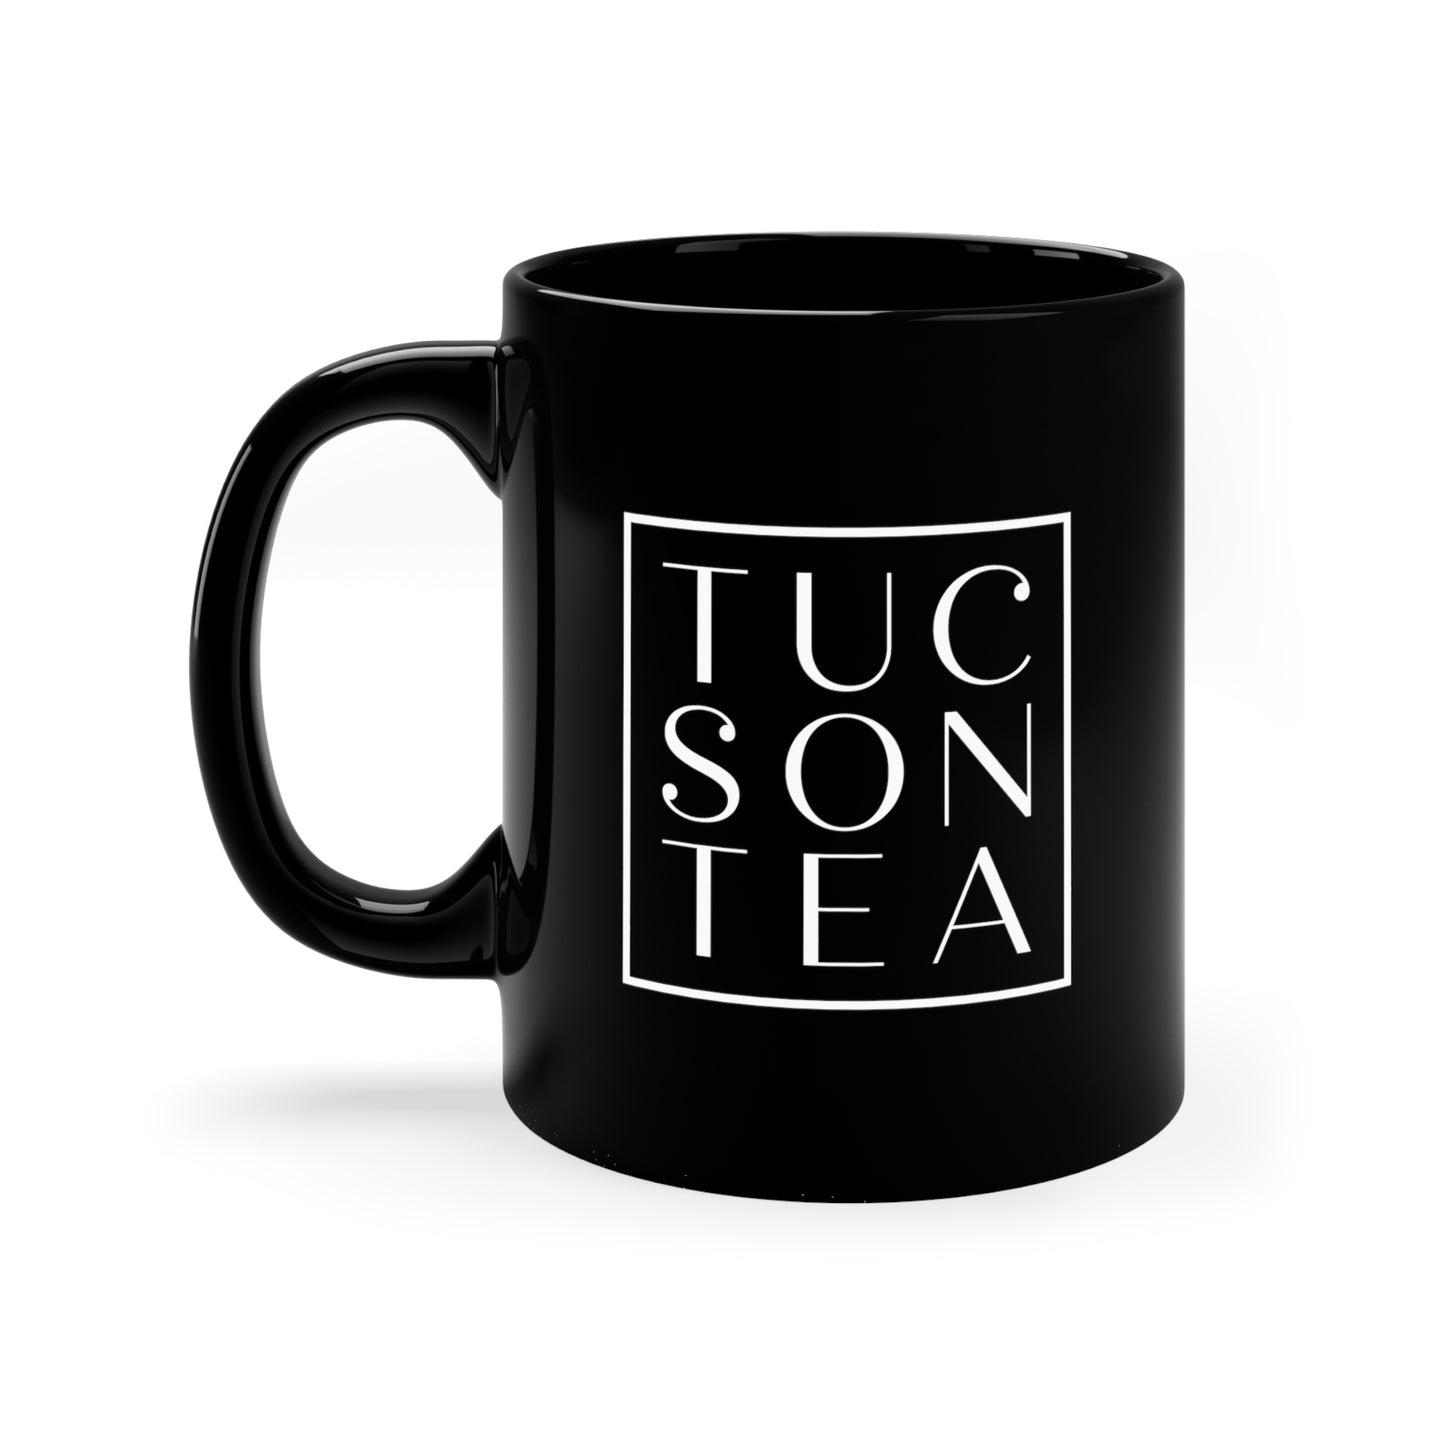 Tucson Tea Company custom mug